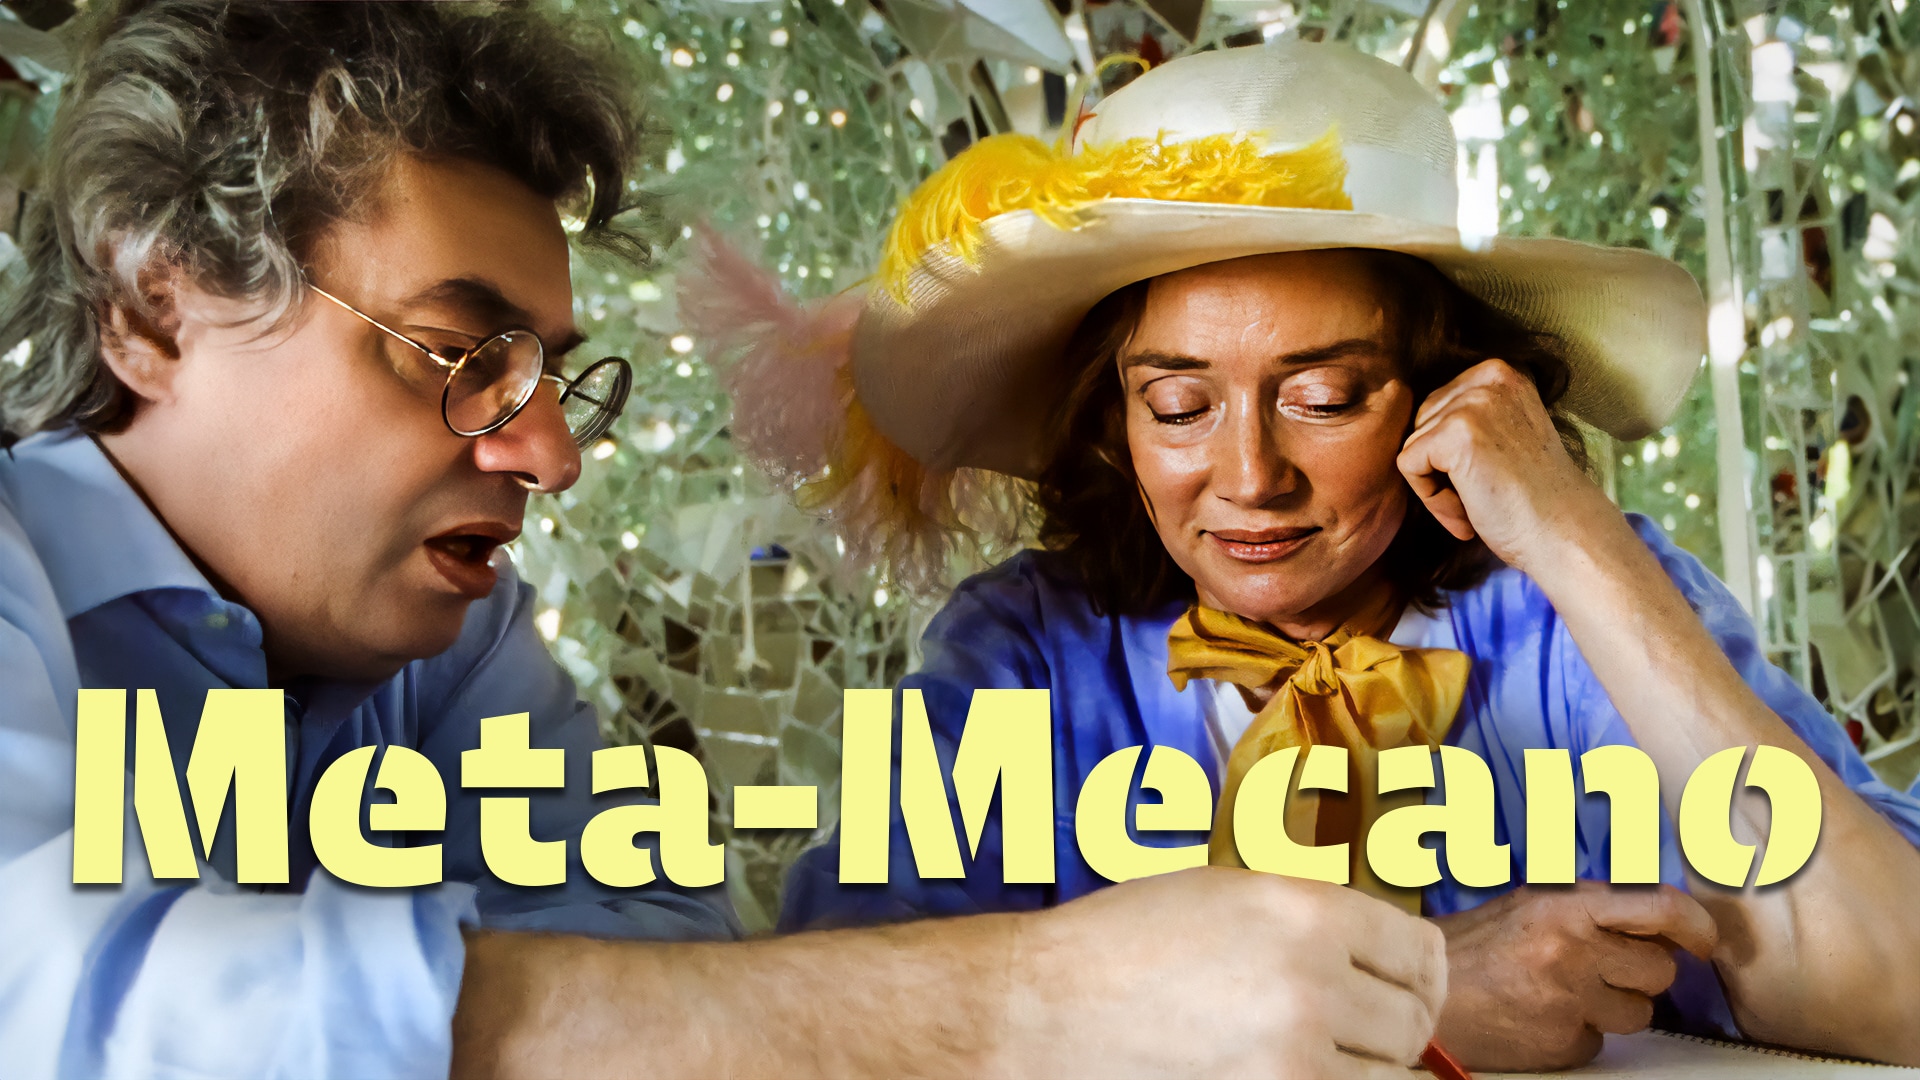 Meta-Mecano